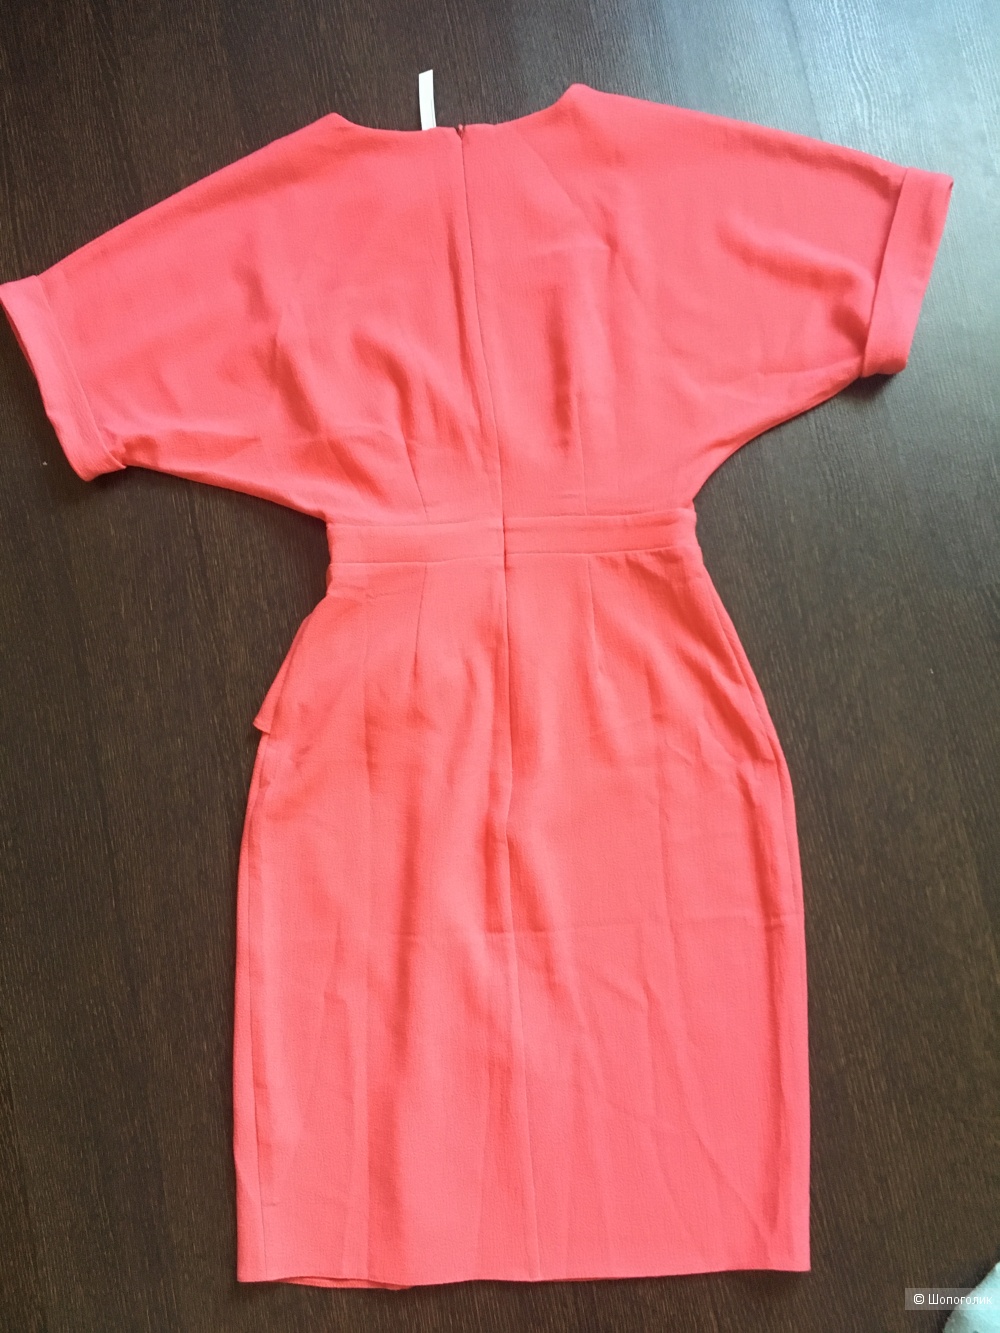 Платье Asos размер  40-42